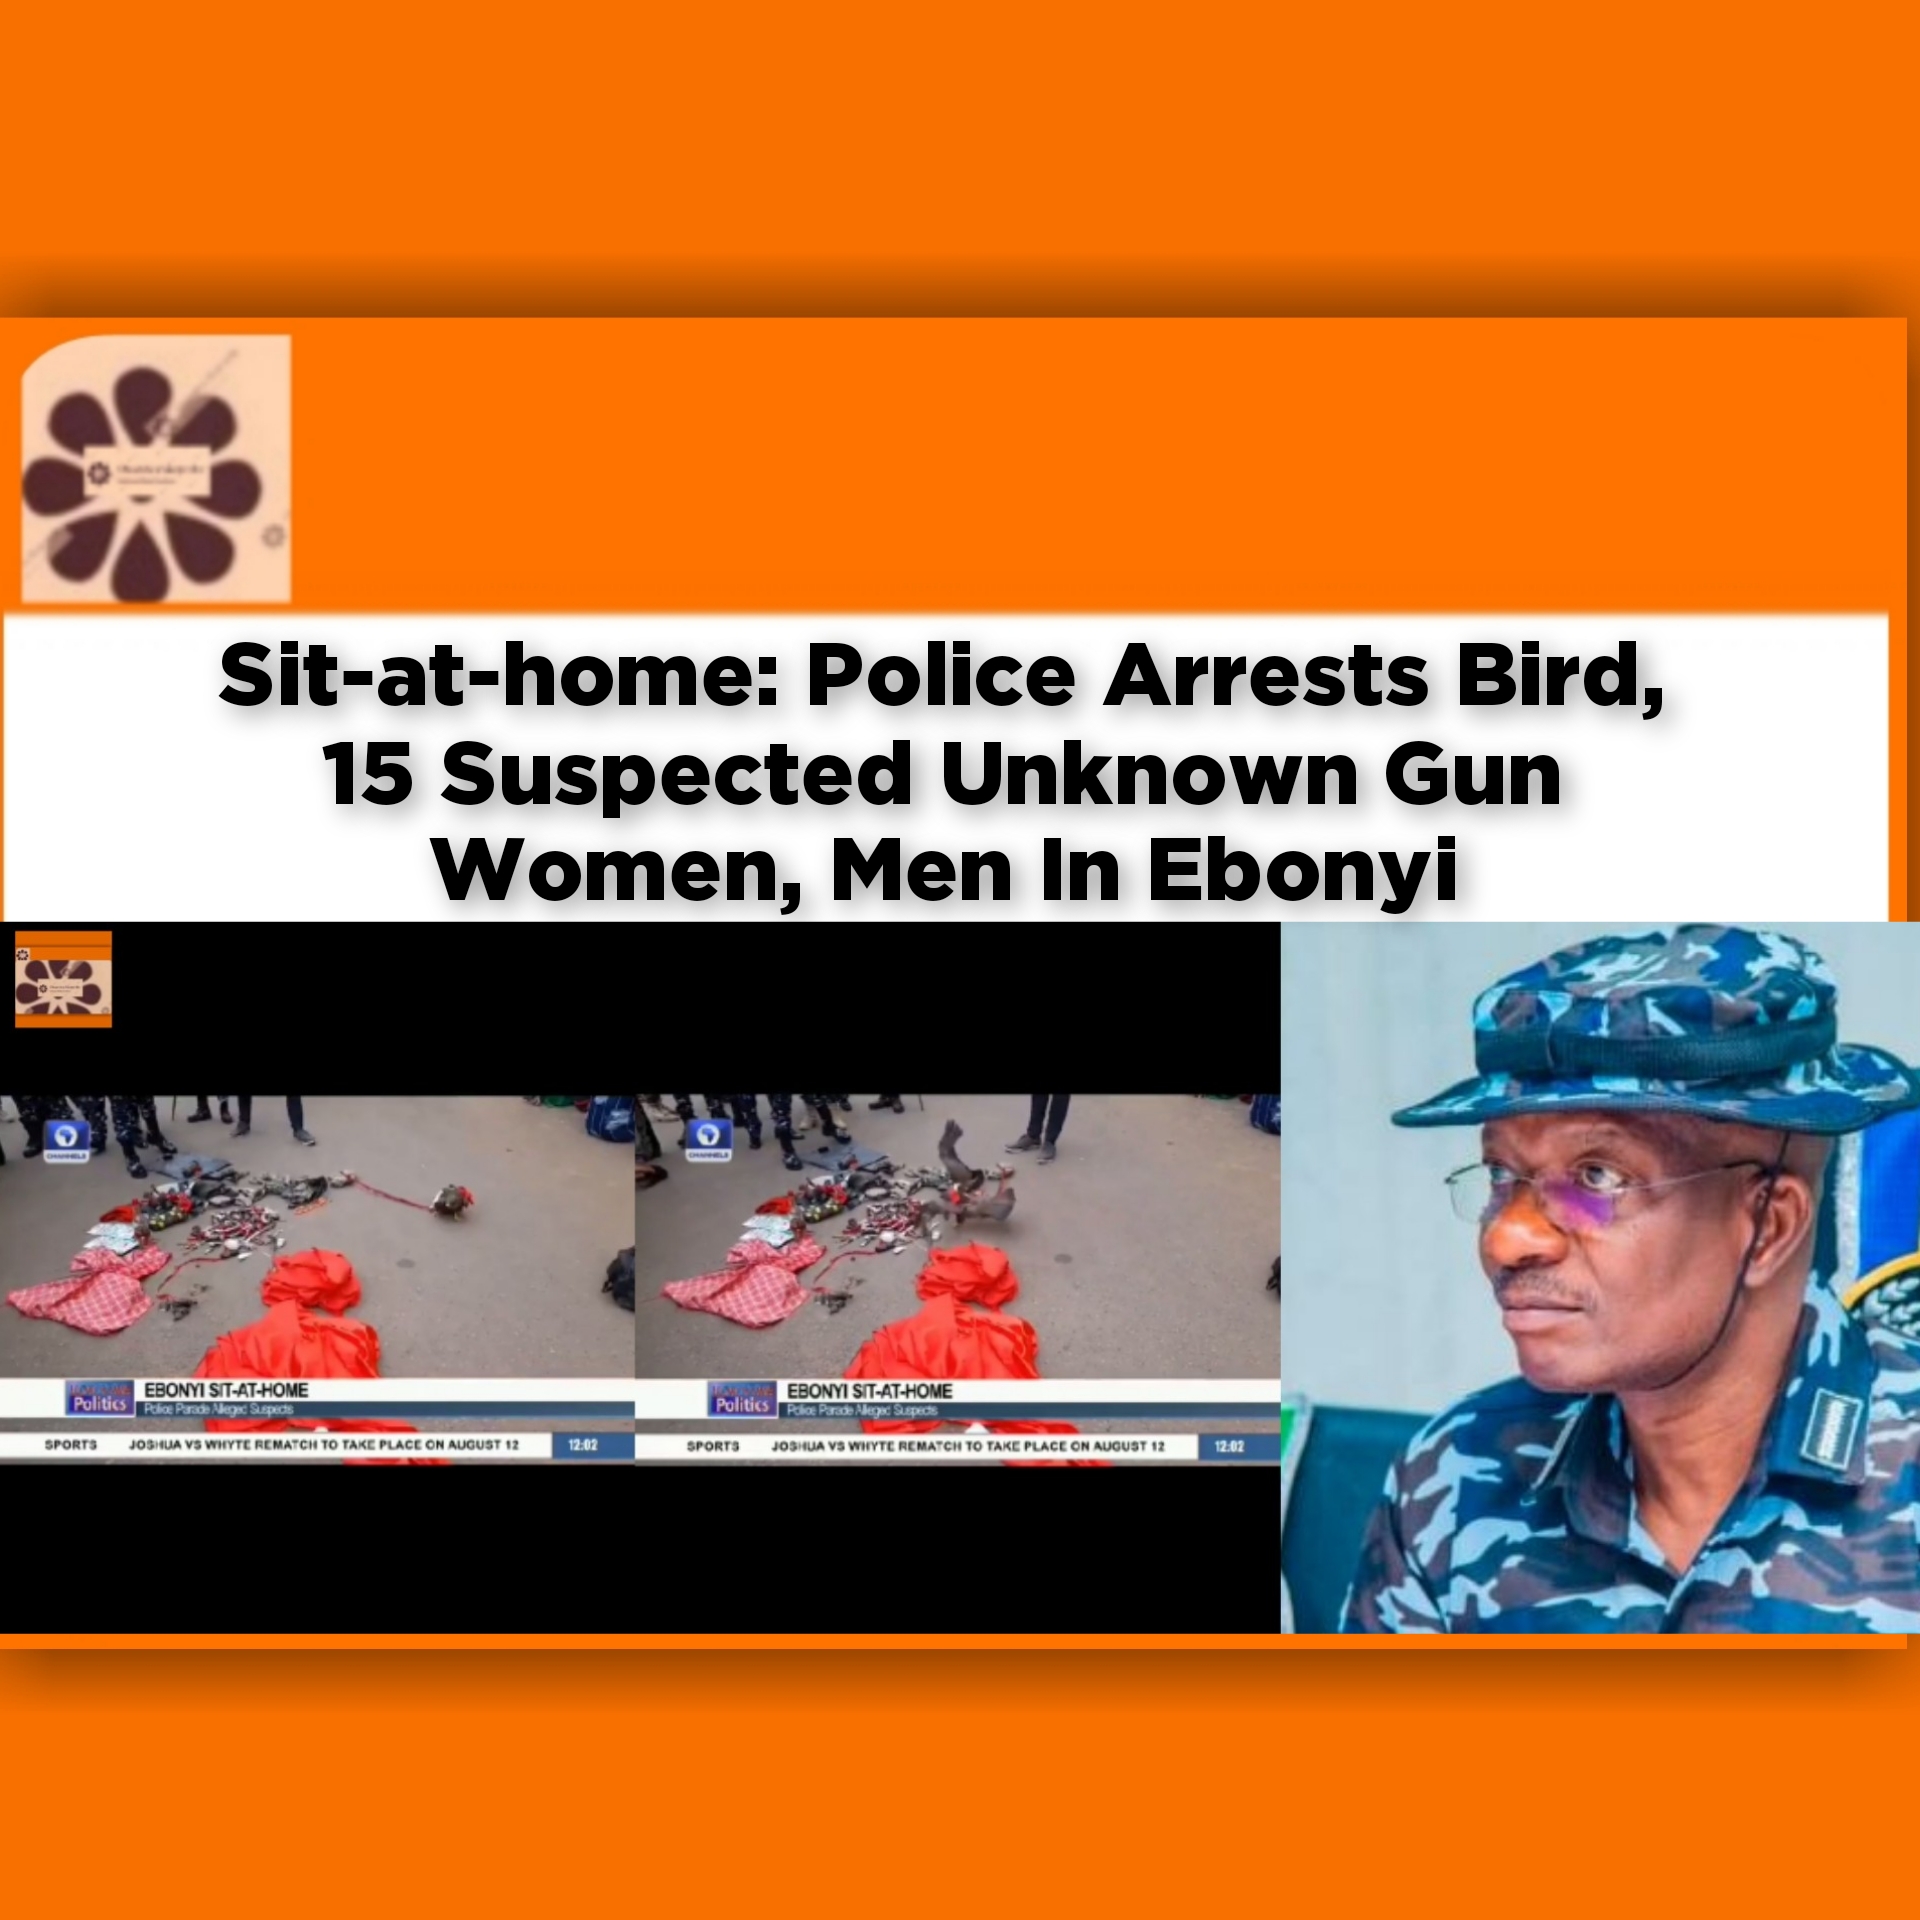 Sit-at-home: Police Arrests Bird, 15 Suspected Unknown Gun Women, Men In Ebonyi ~ OsazuwaAkonedo #Abakaliki #Biafra #Bird #ebonyi #Ekpa #Gunmen #Gunwomen #ipob #Ishieke #Police #Simon #SitAtHome #Ukwuachi #Unknown